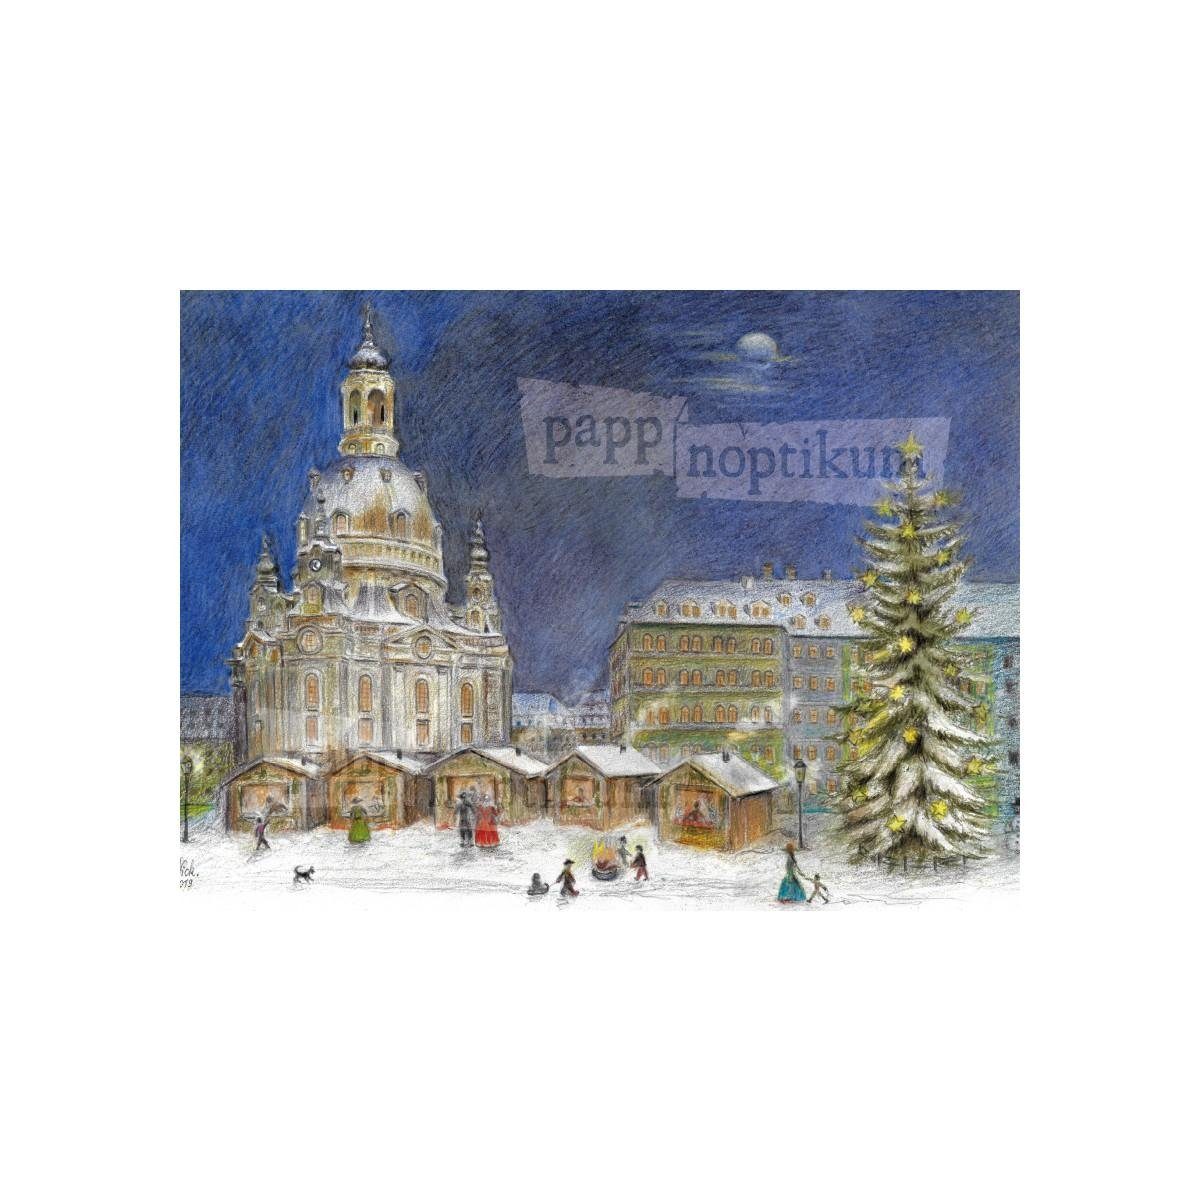 - Dresden Frauenkirche pappnoptikum Grußkarte - (Klappkarte) 1009 Weihnachtsmarkt